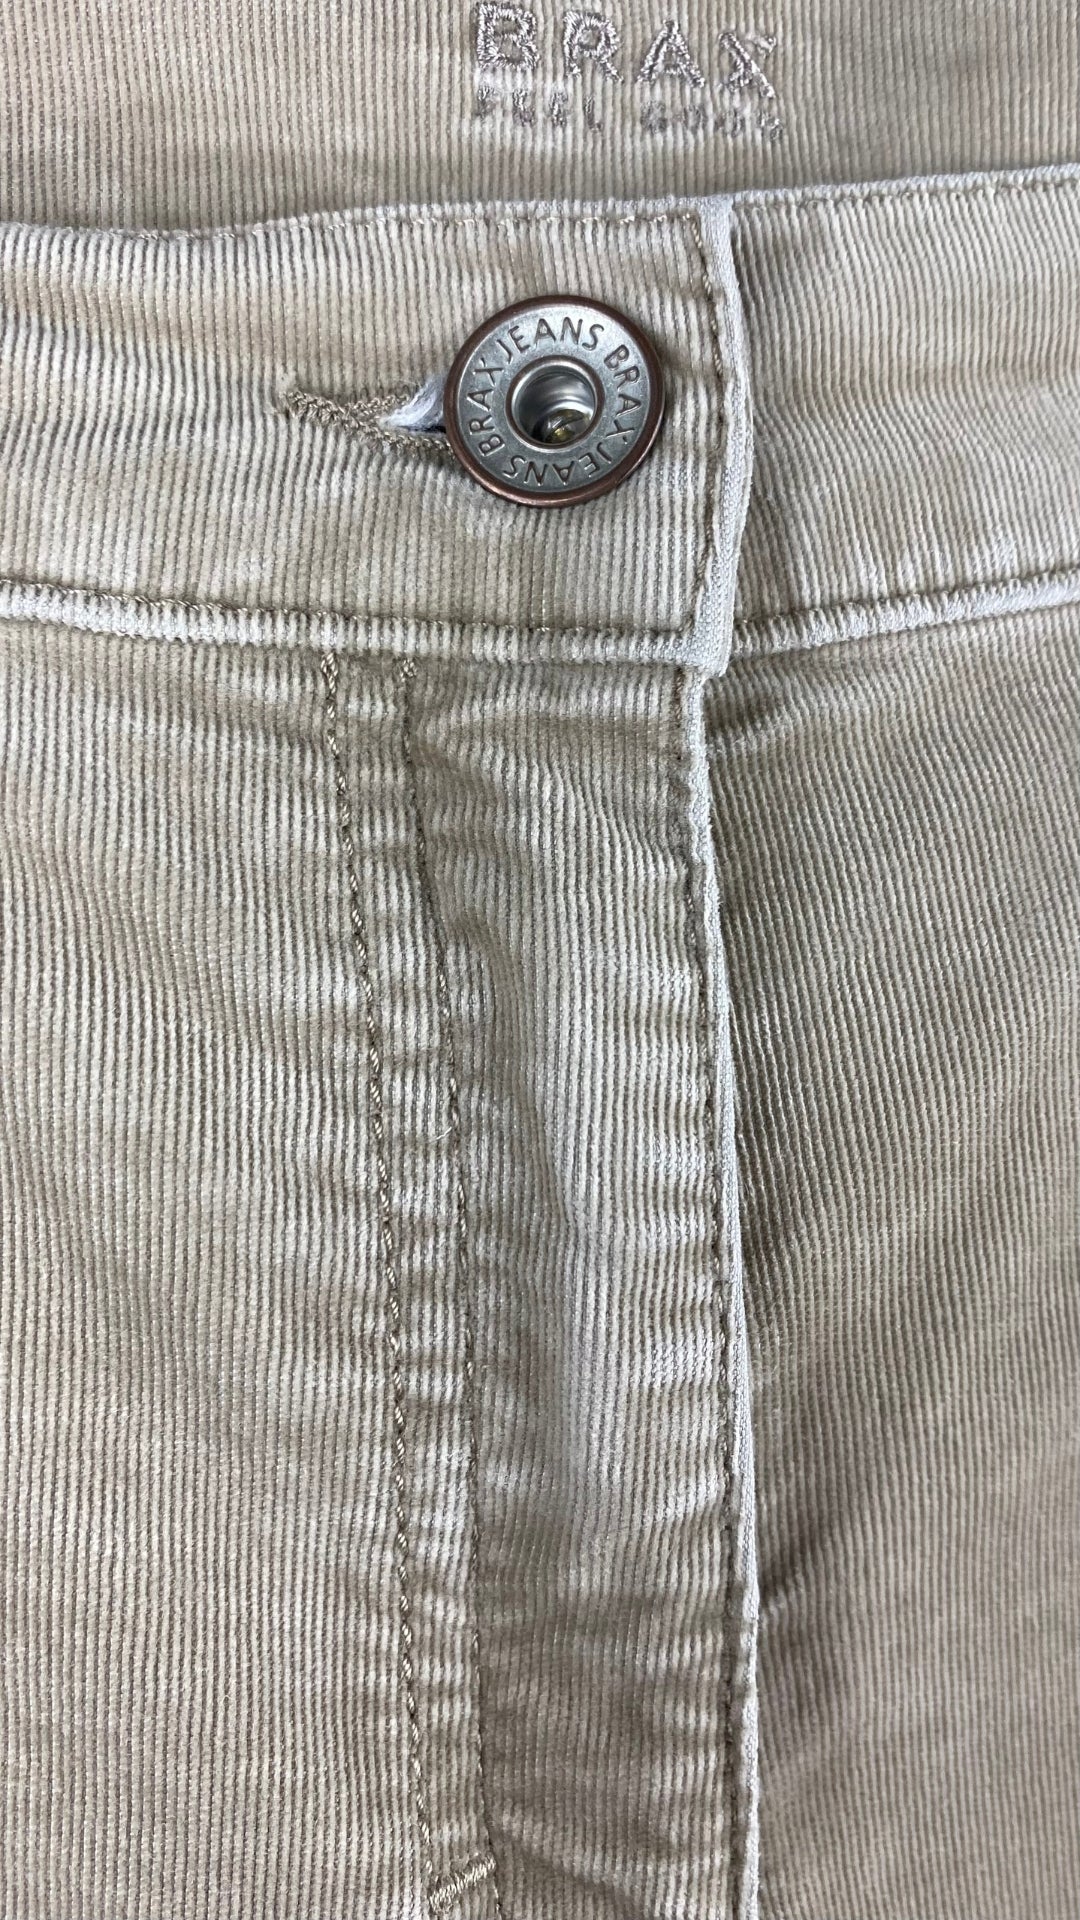 Pantalon en fin velours côtelé beige Brax, taille 31. Vue de près du bouton.